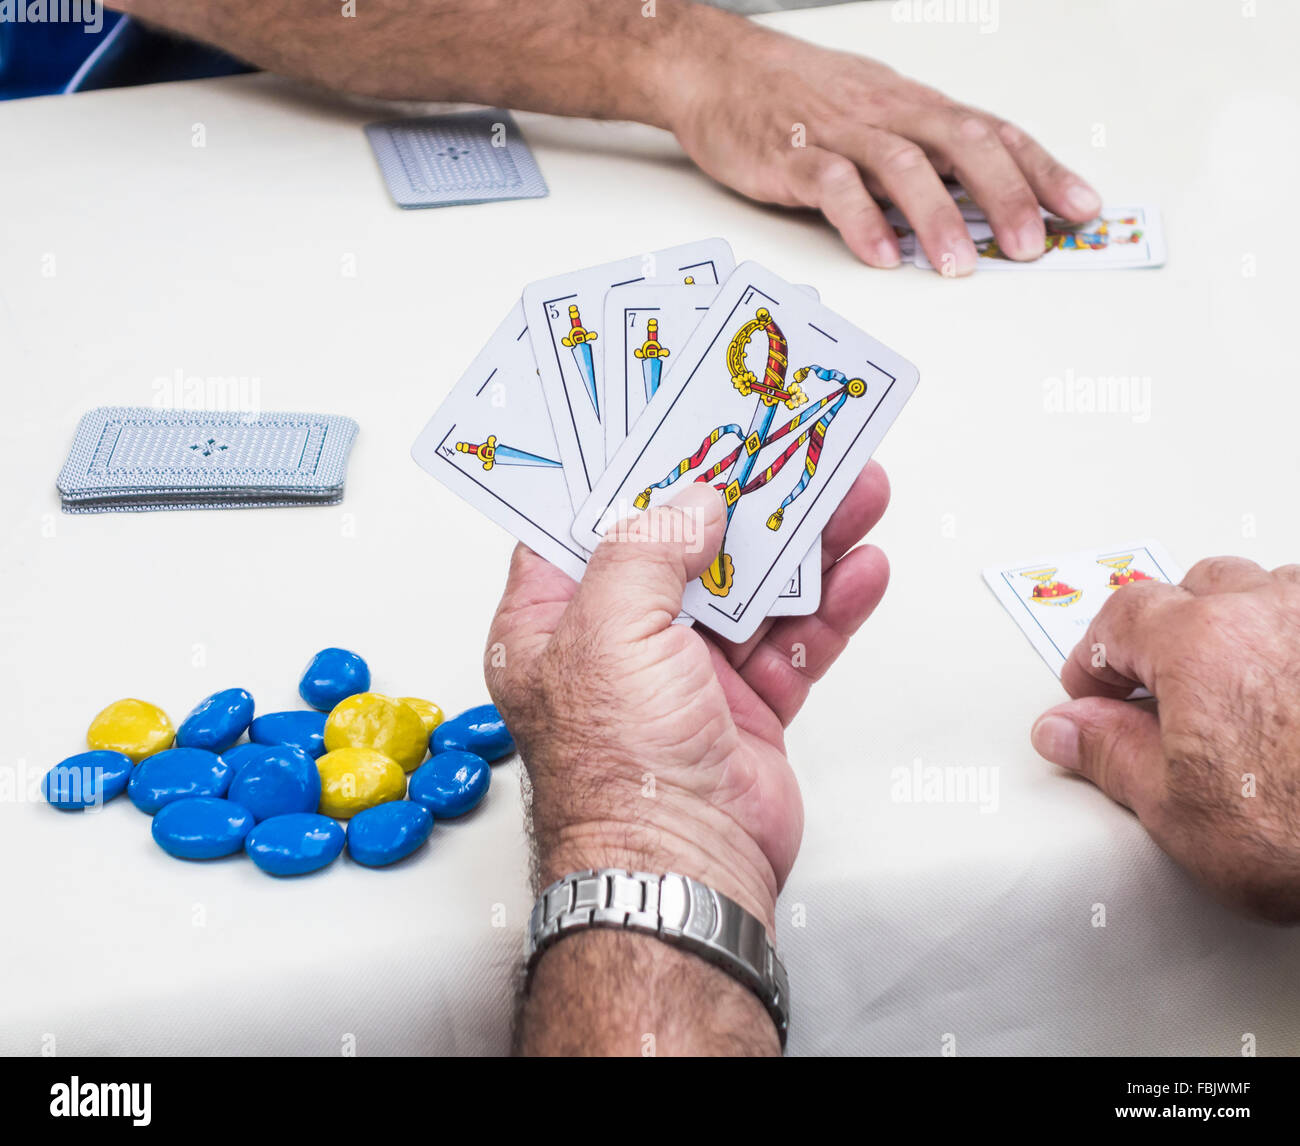 Spanische Männer Spielkarte Spiel namens Zanga in Las Palmas auf Gran Canaria Stockfoto